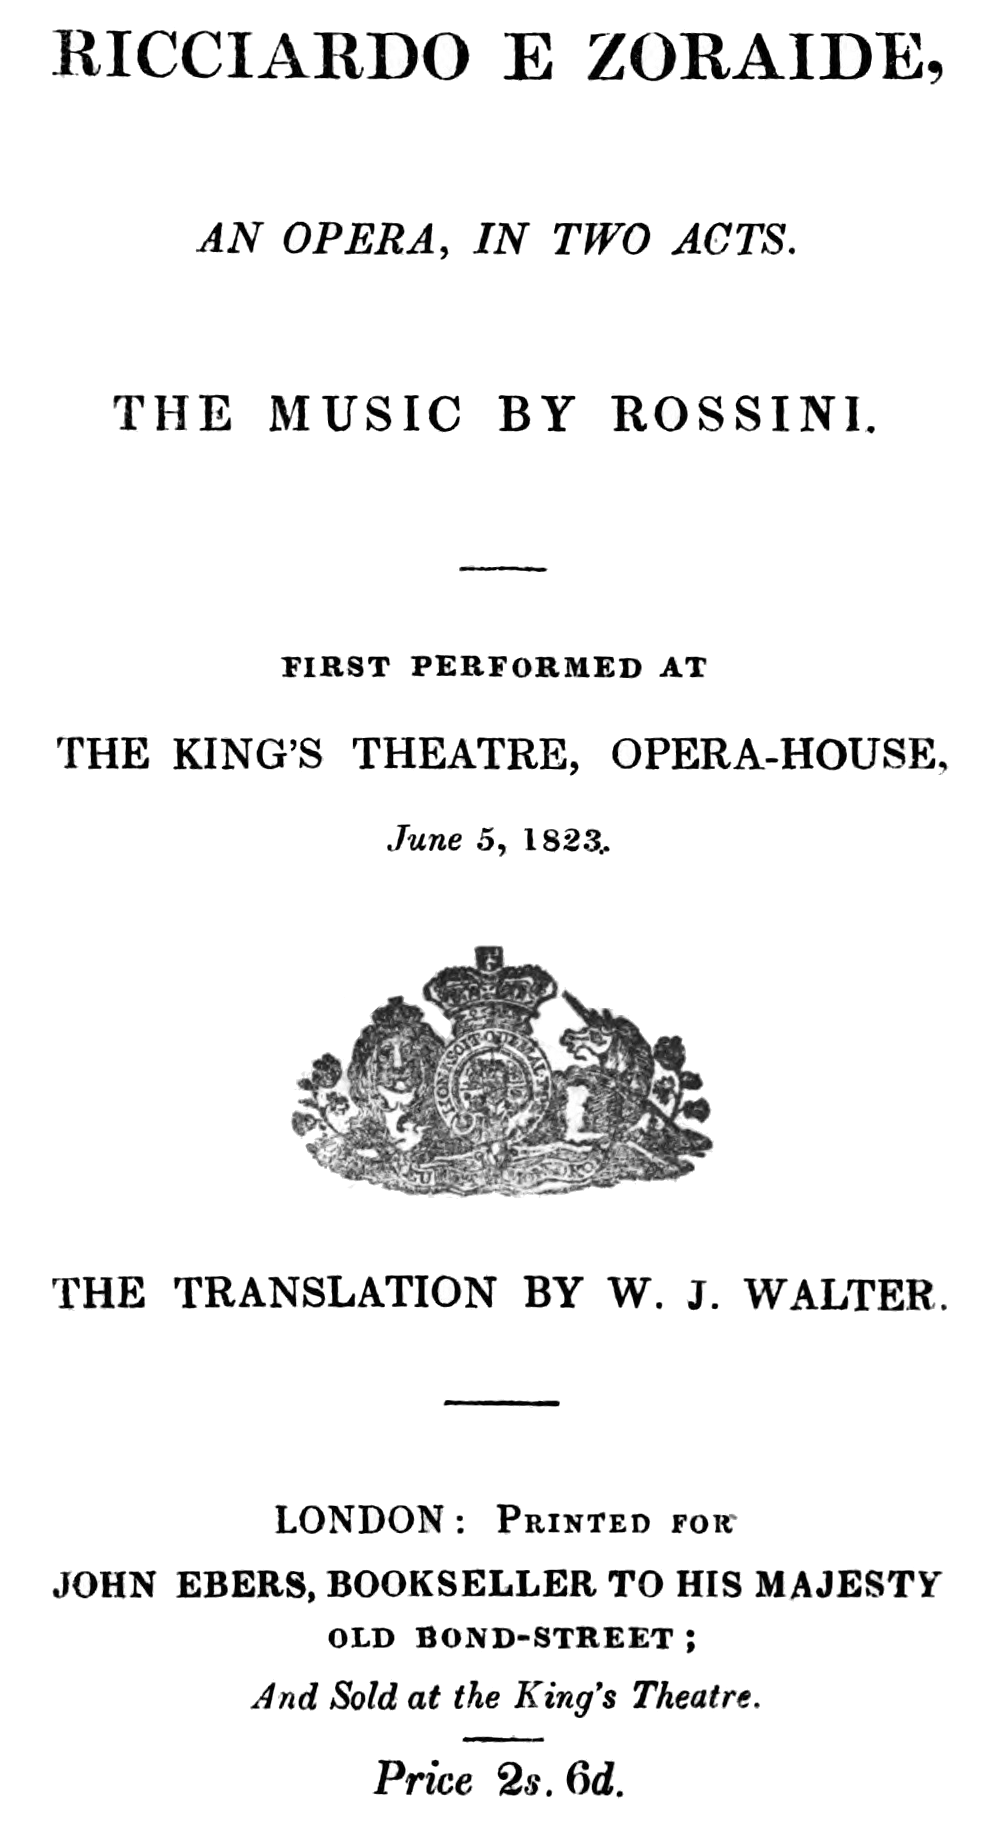 Gioachino_Rossini_-_Ricciardo_e_Zoraide_-_titlepage_of_the_libretto_-_London_1823